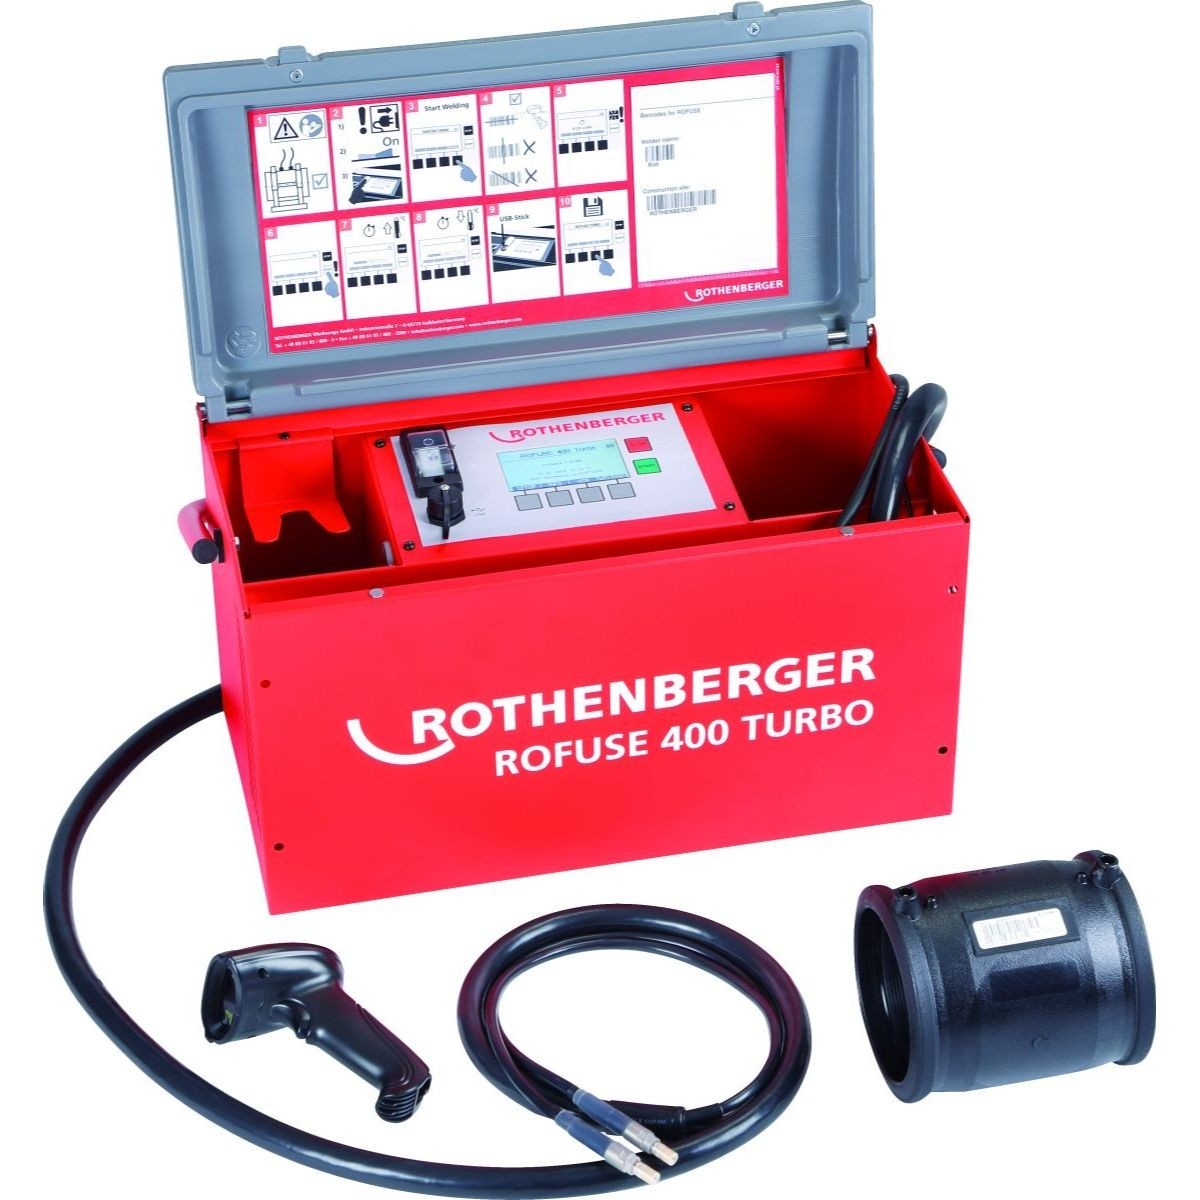 Rothenberger ROTHENBERGER ROWELD ROFUSE 400 TURBO230V 50/60Hz - 1000000999